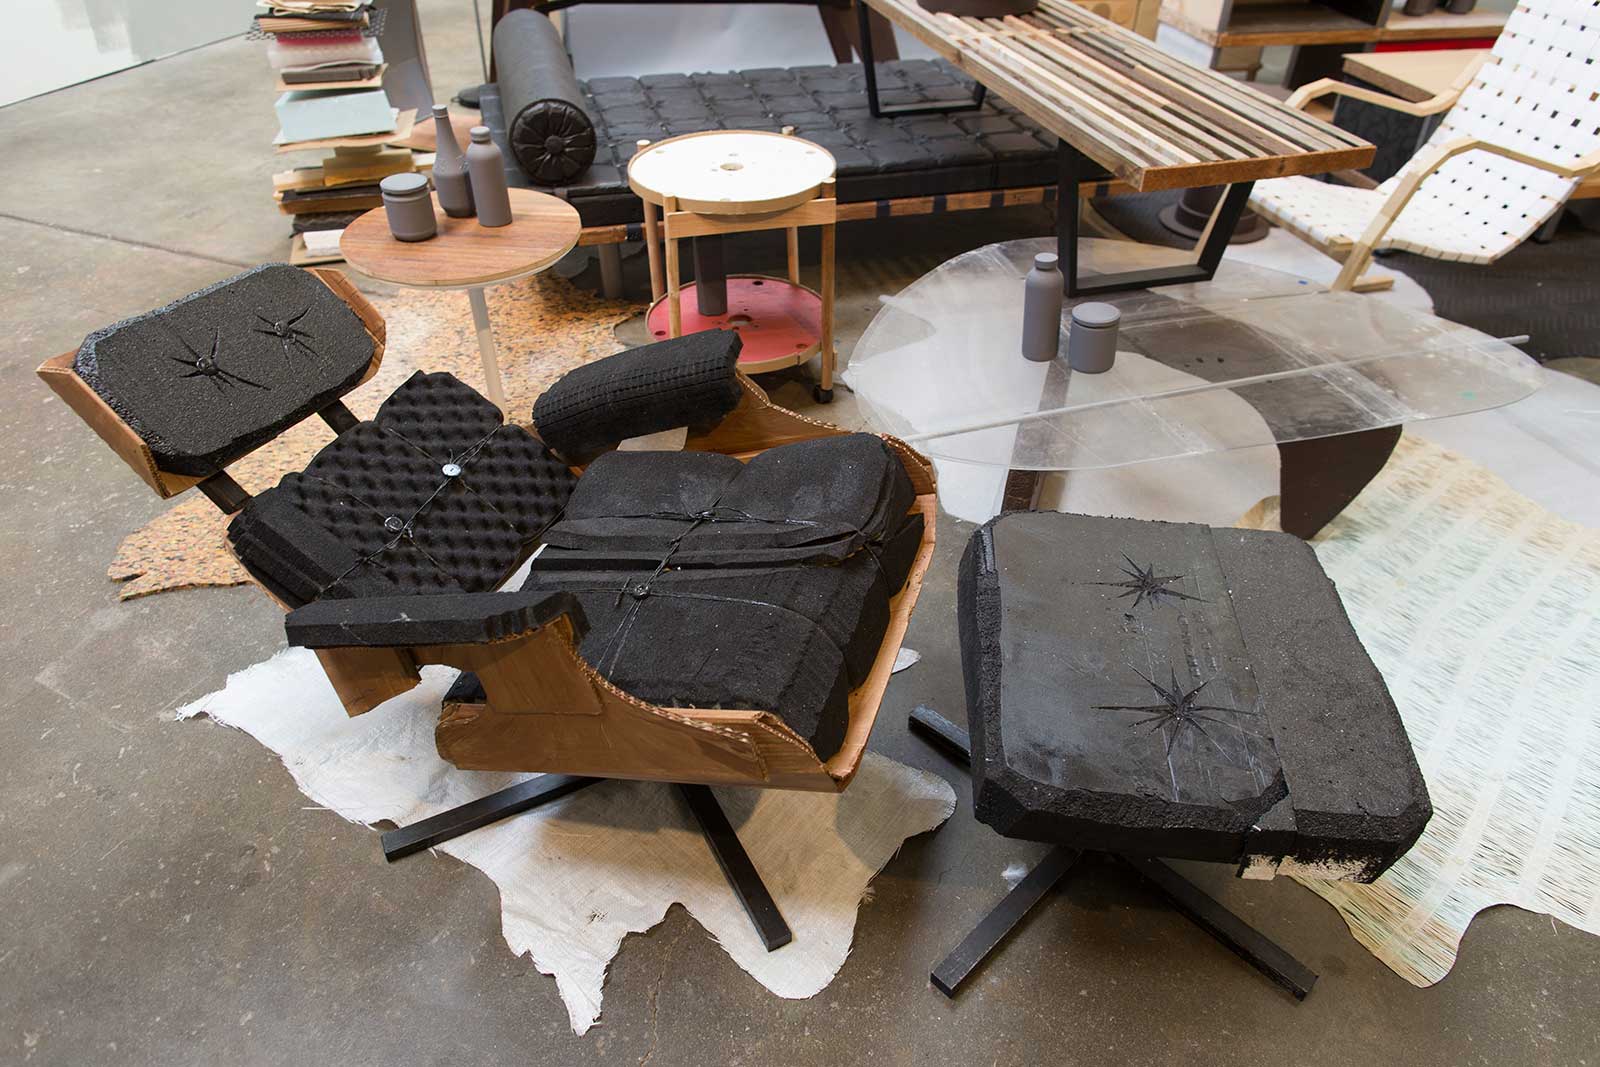 designer furniture made from trash